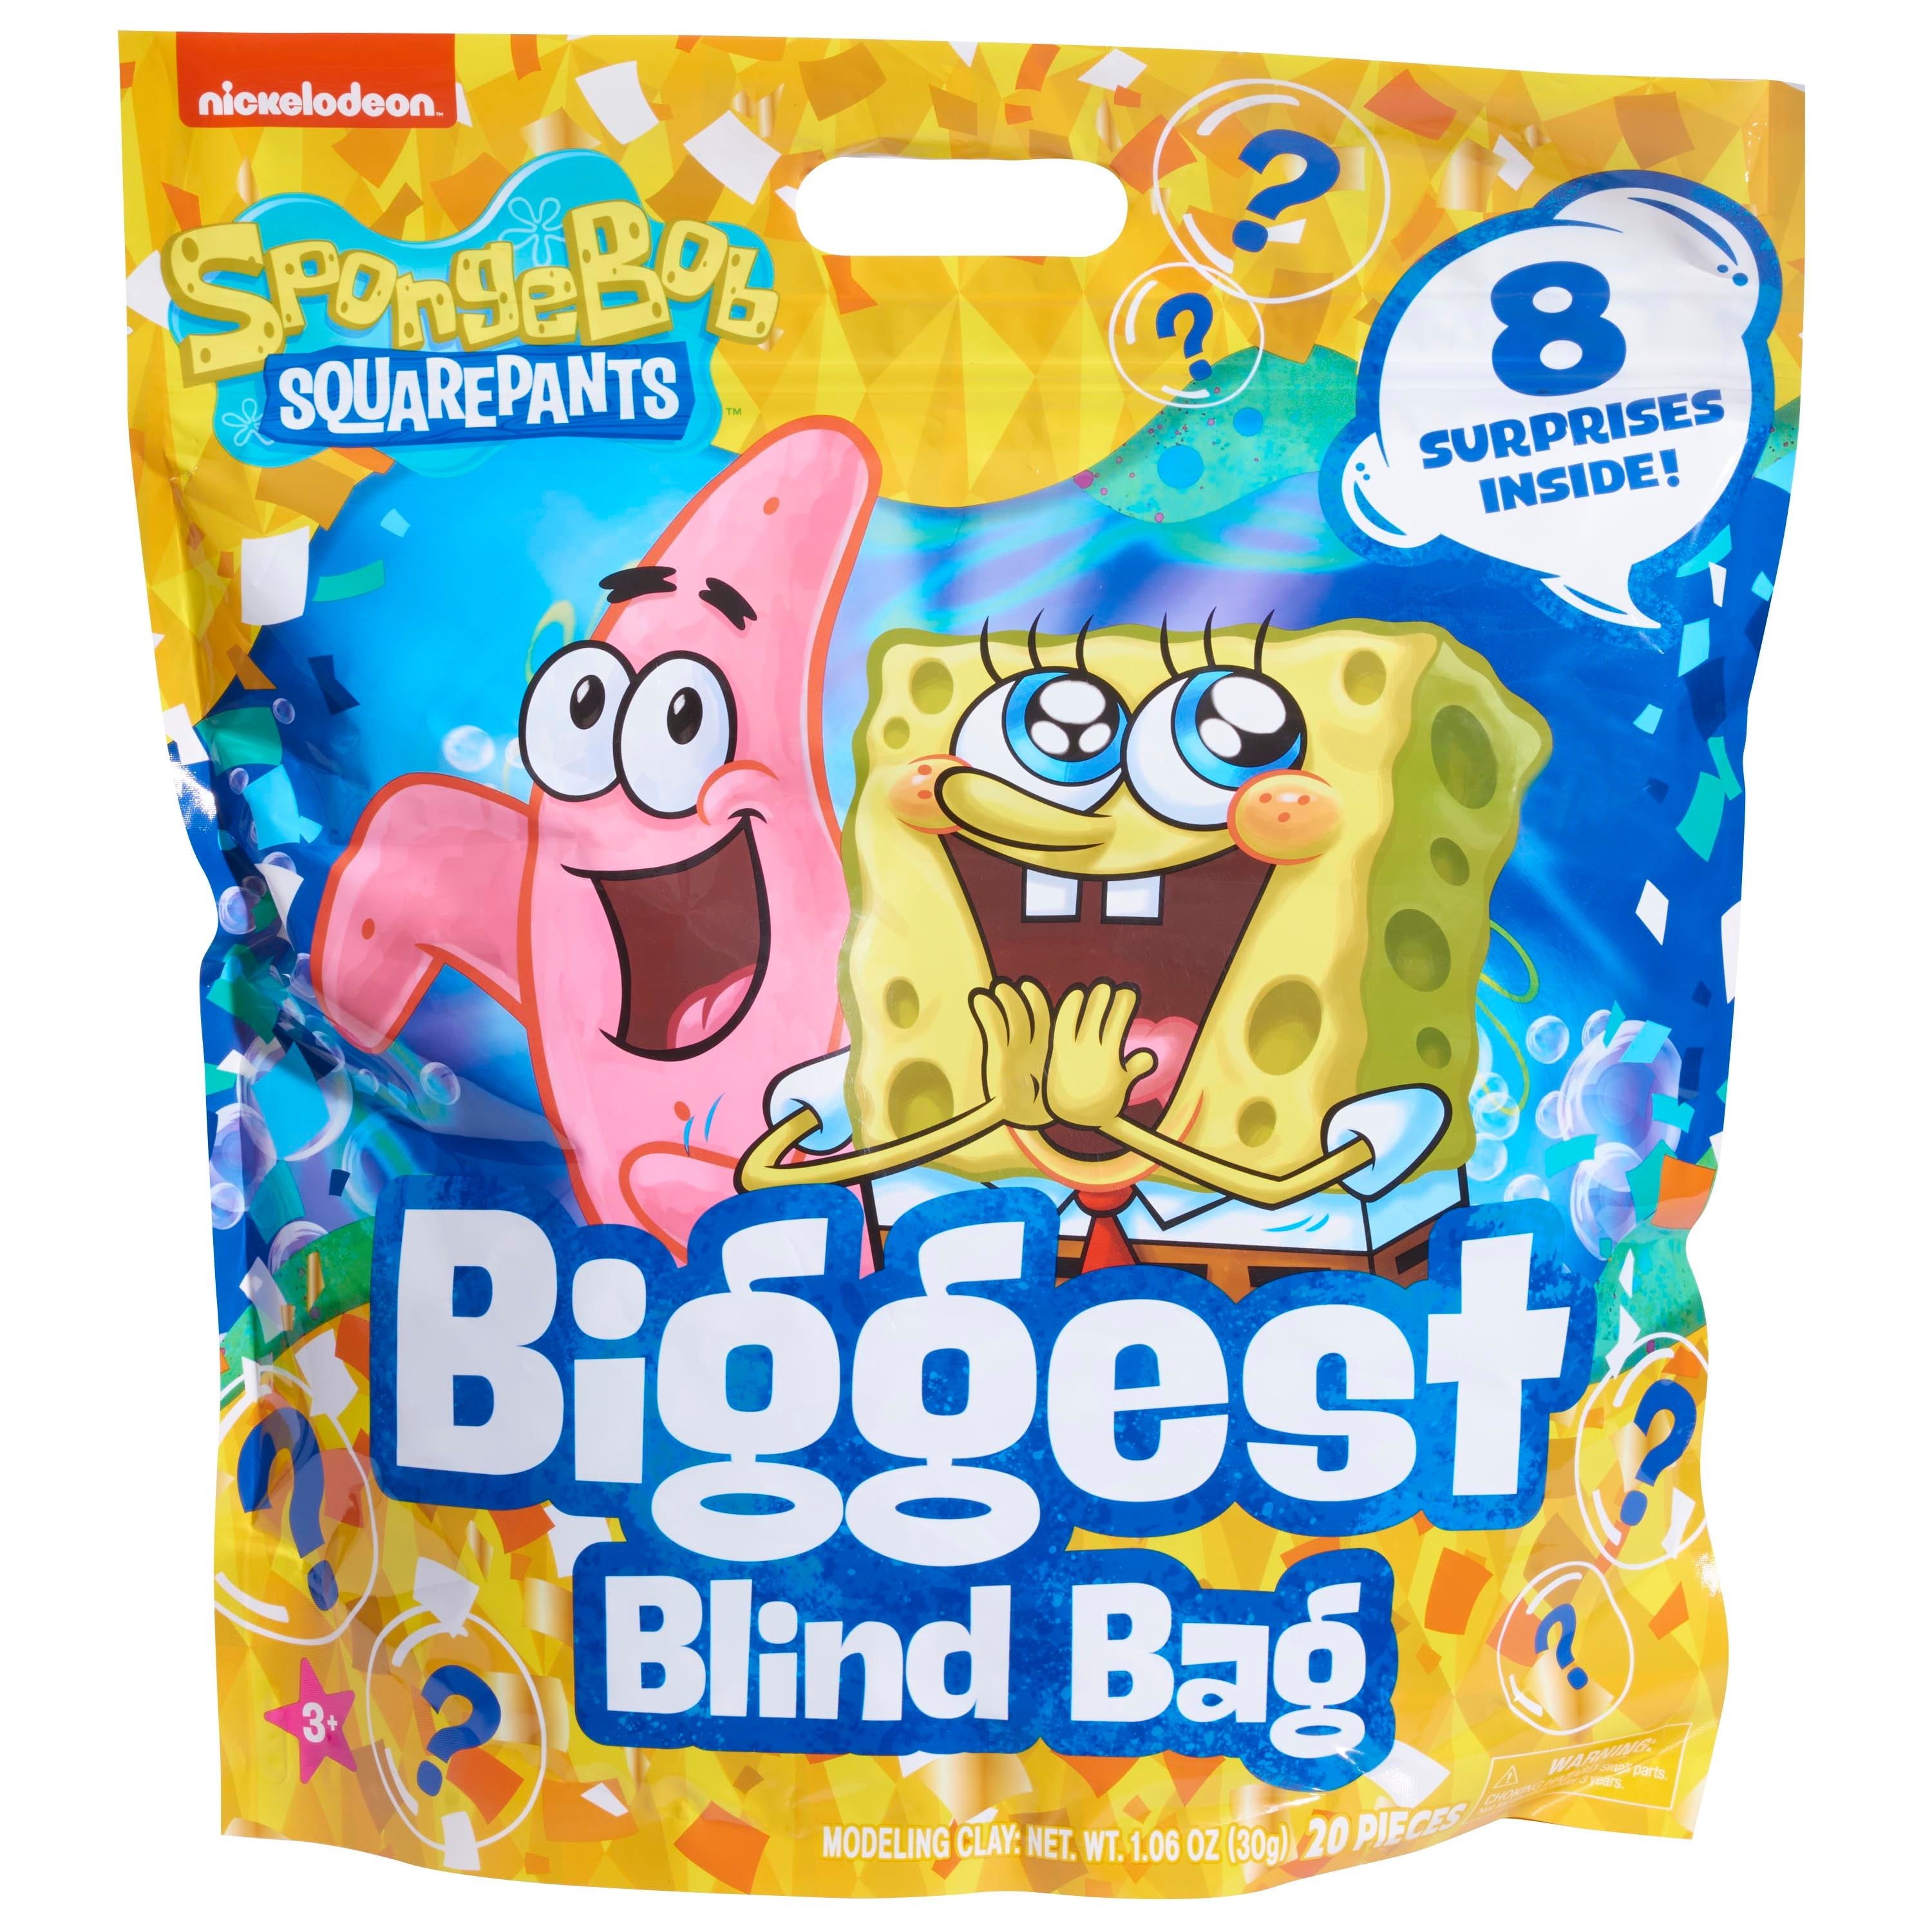 SpongeBob SquarePants Biggest Blind Bag, Kids Toys for Ages 3 up